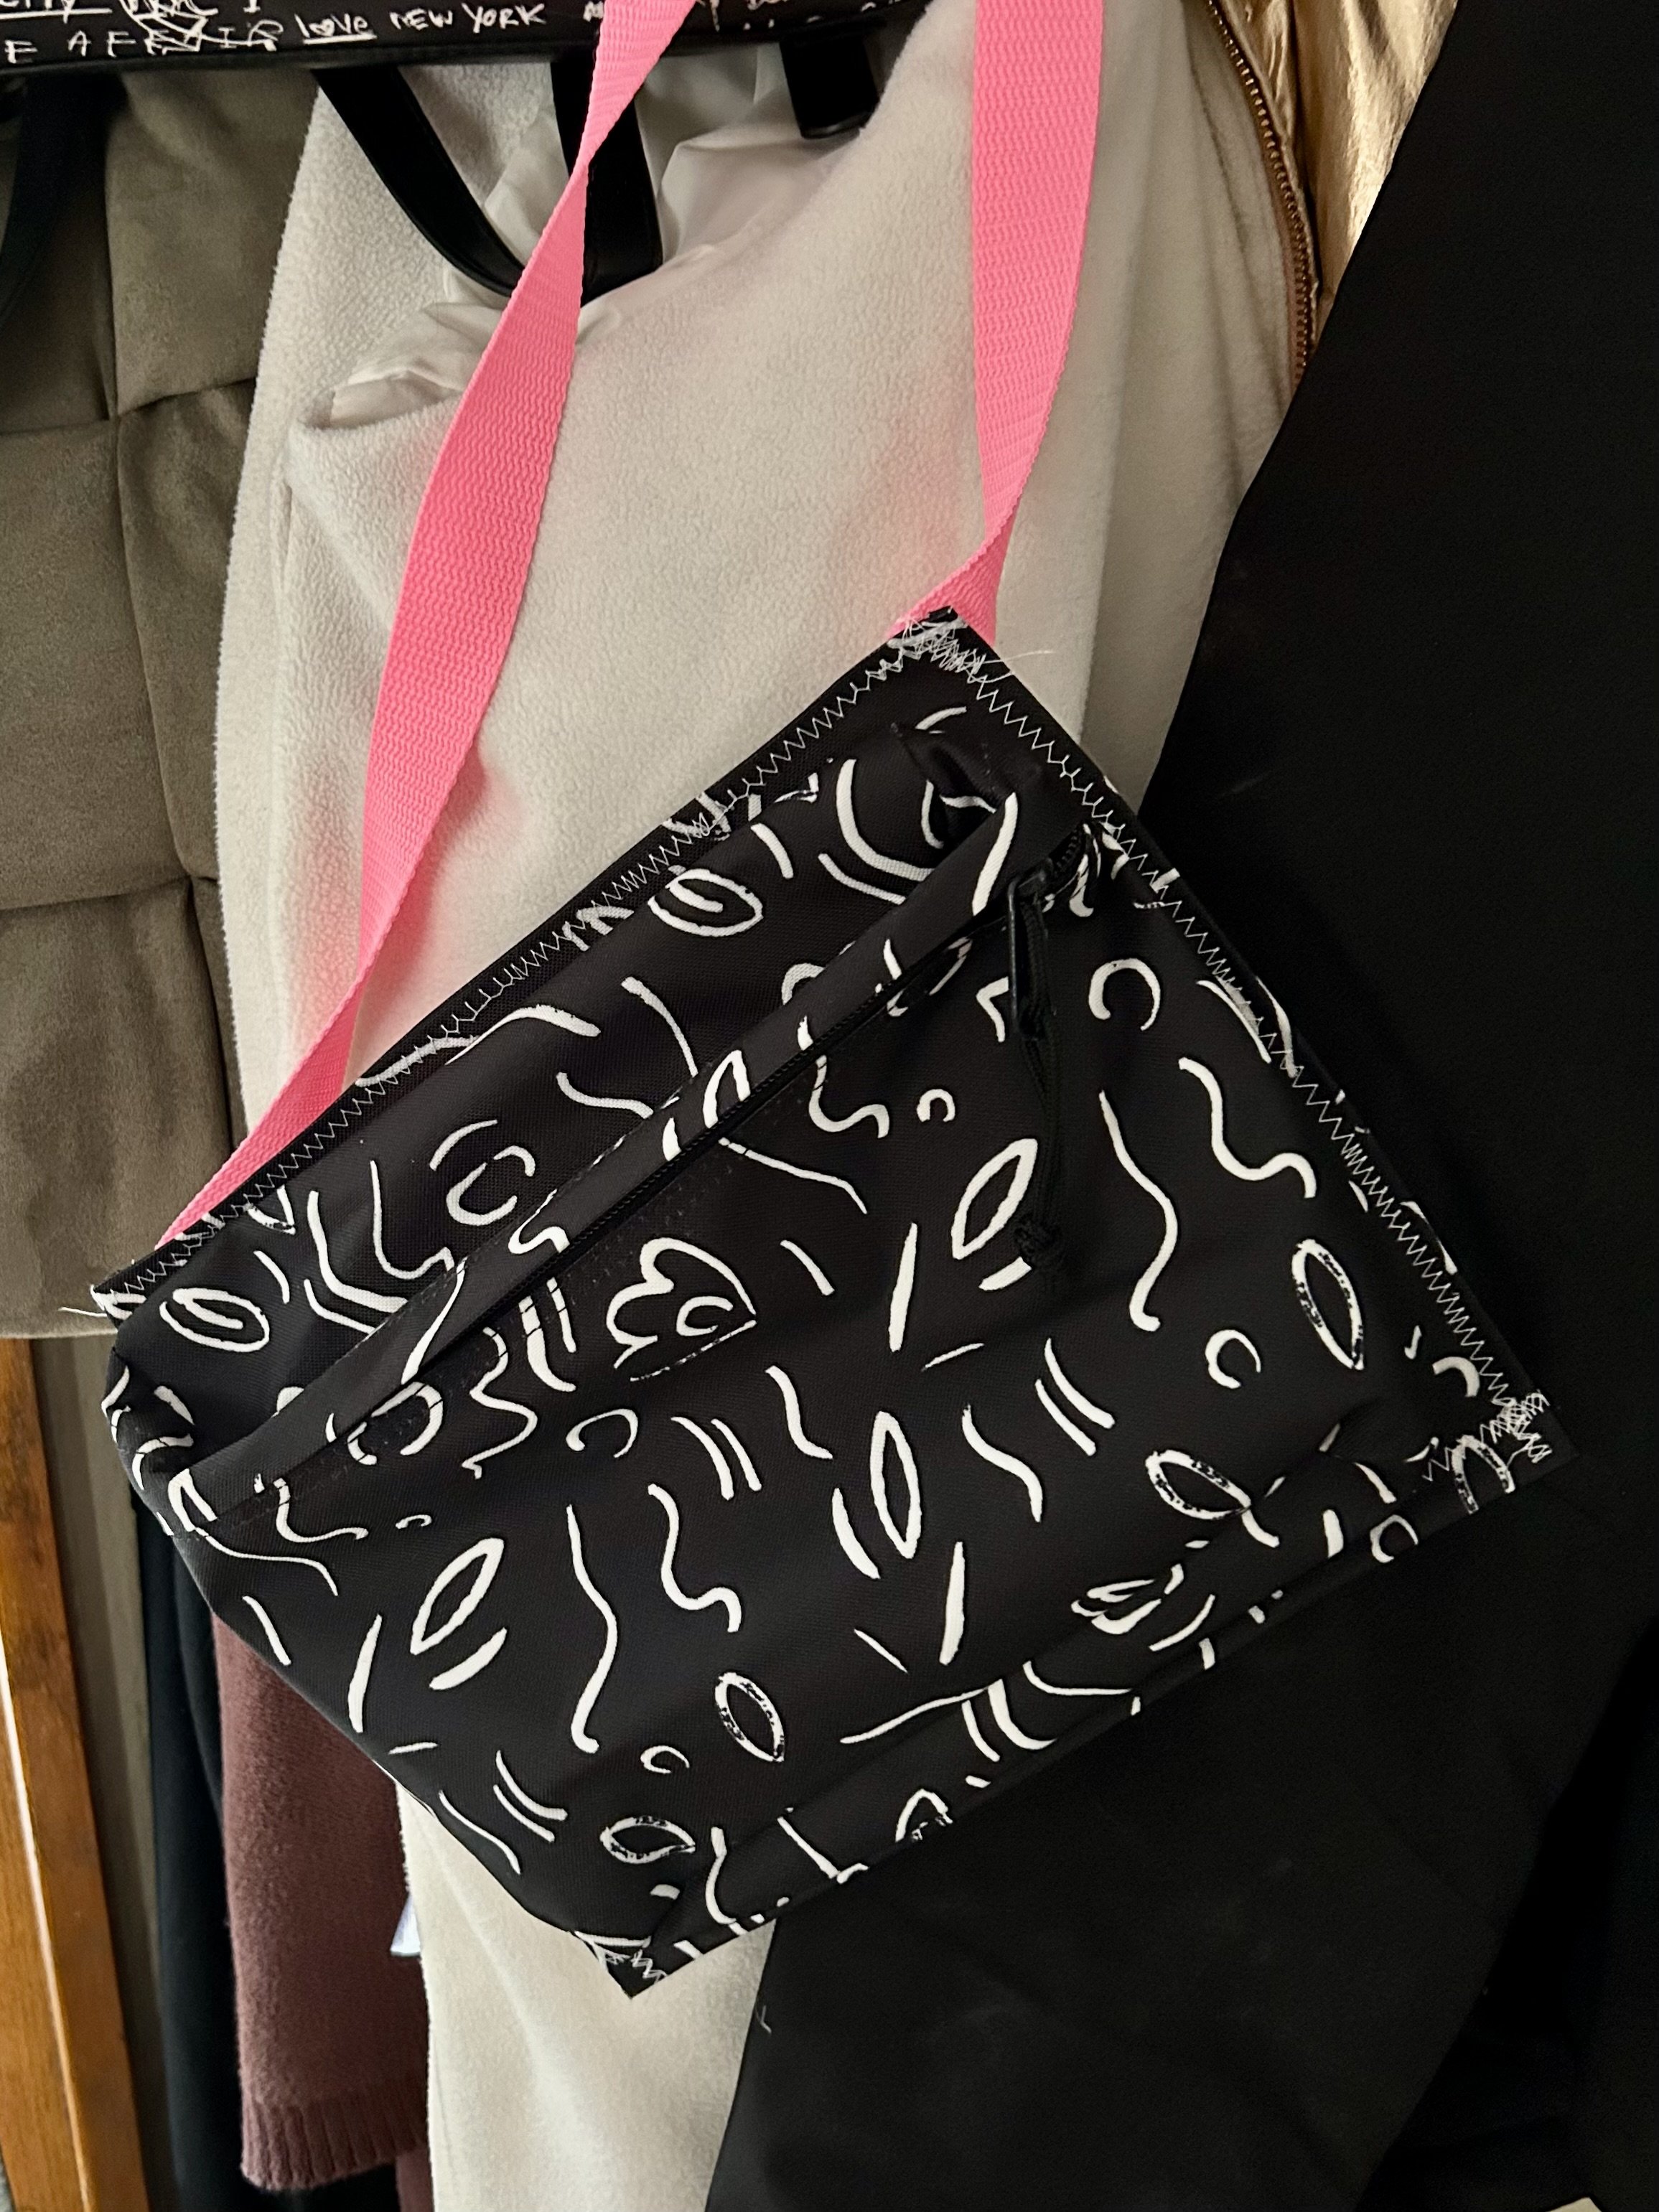 Pin on Bag pattern